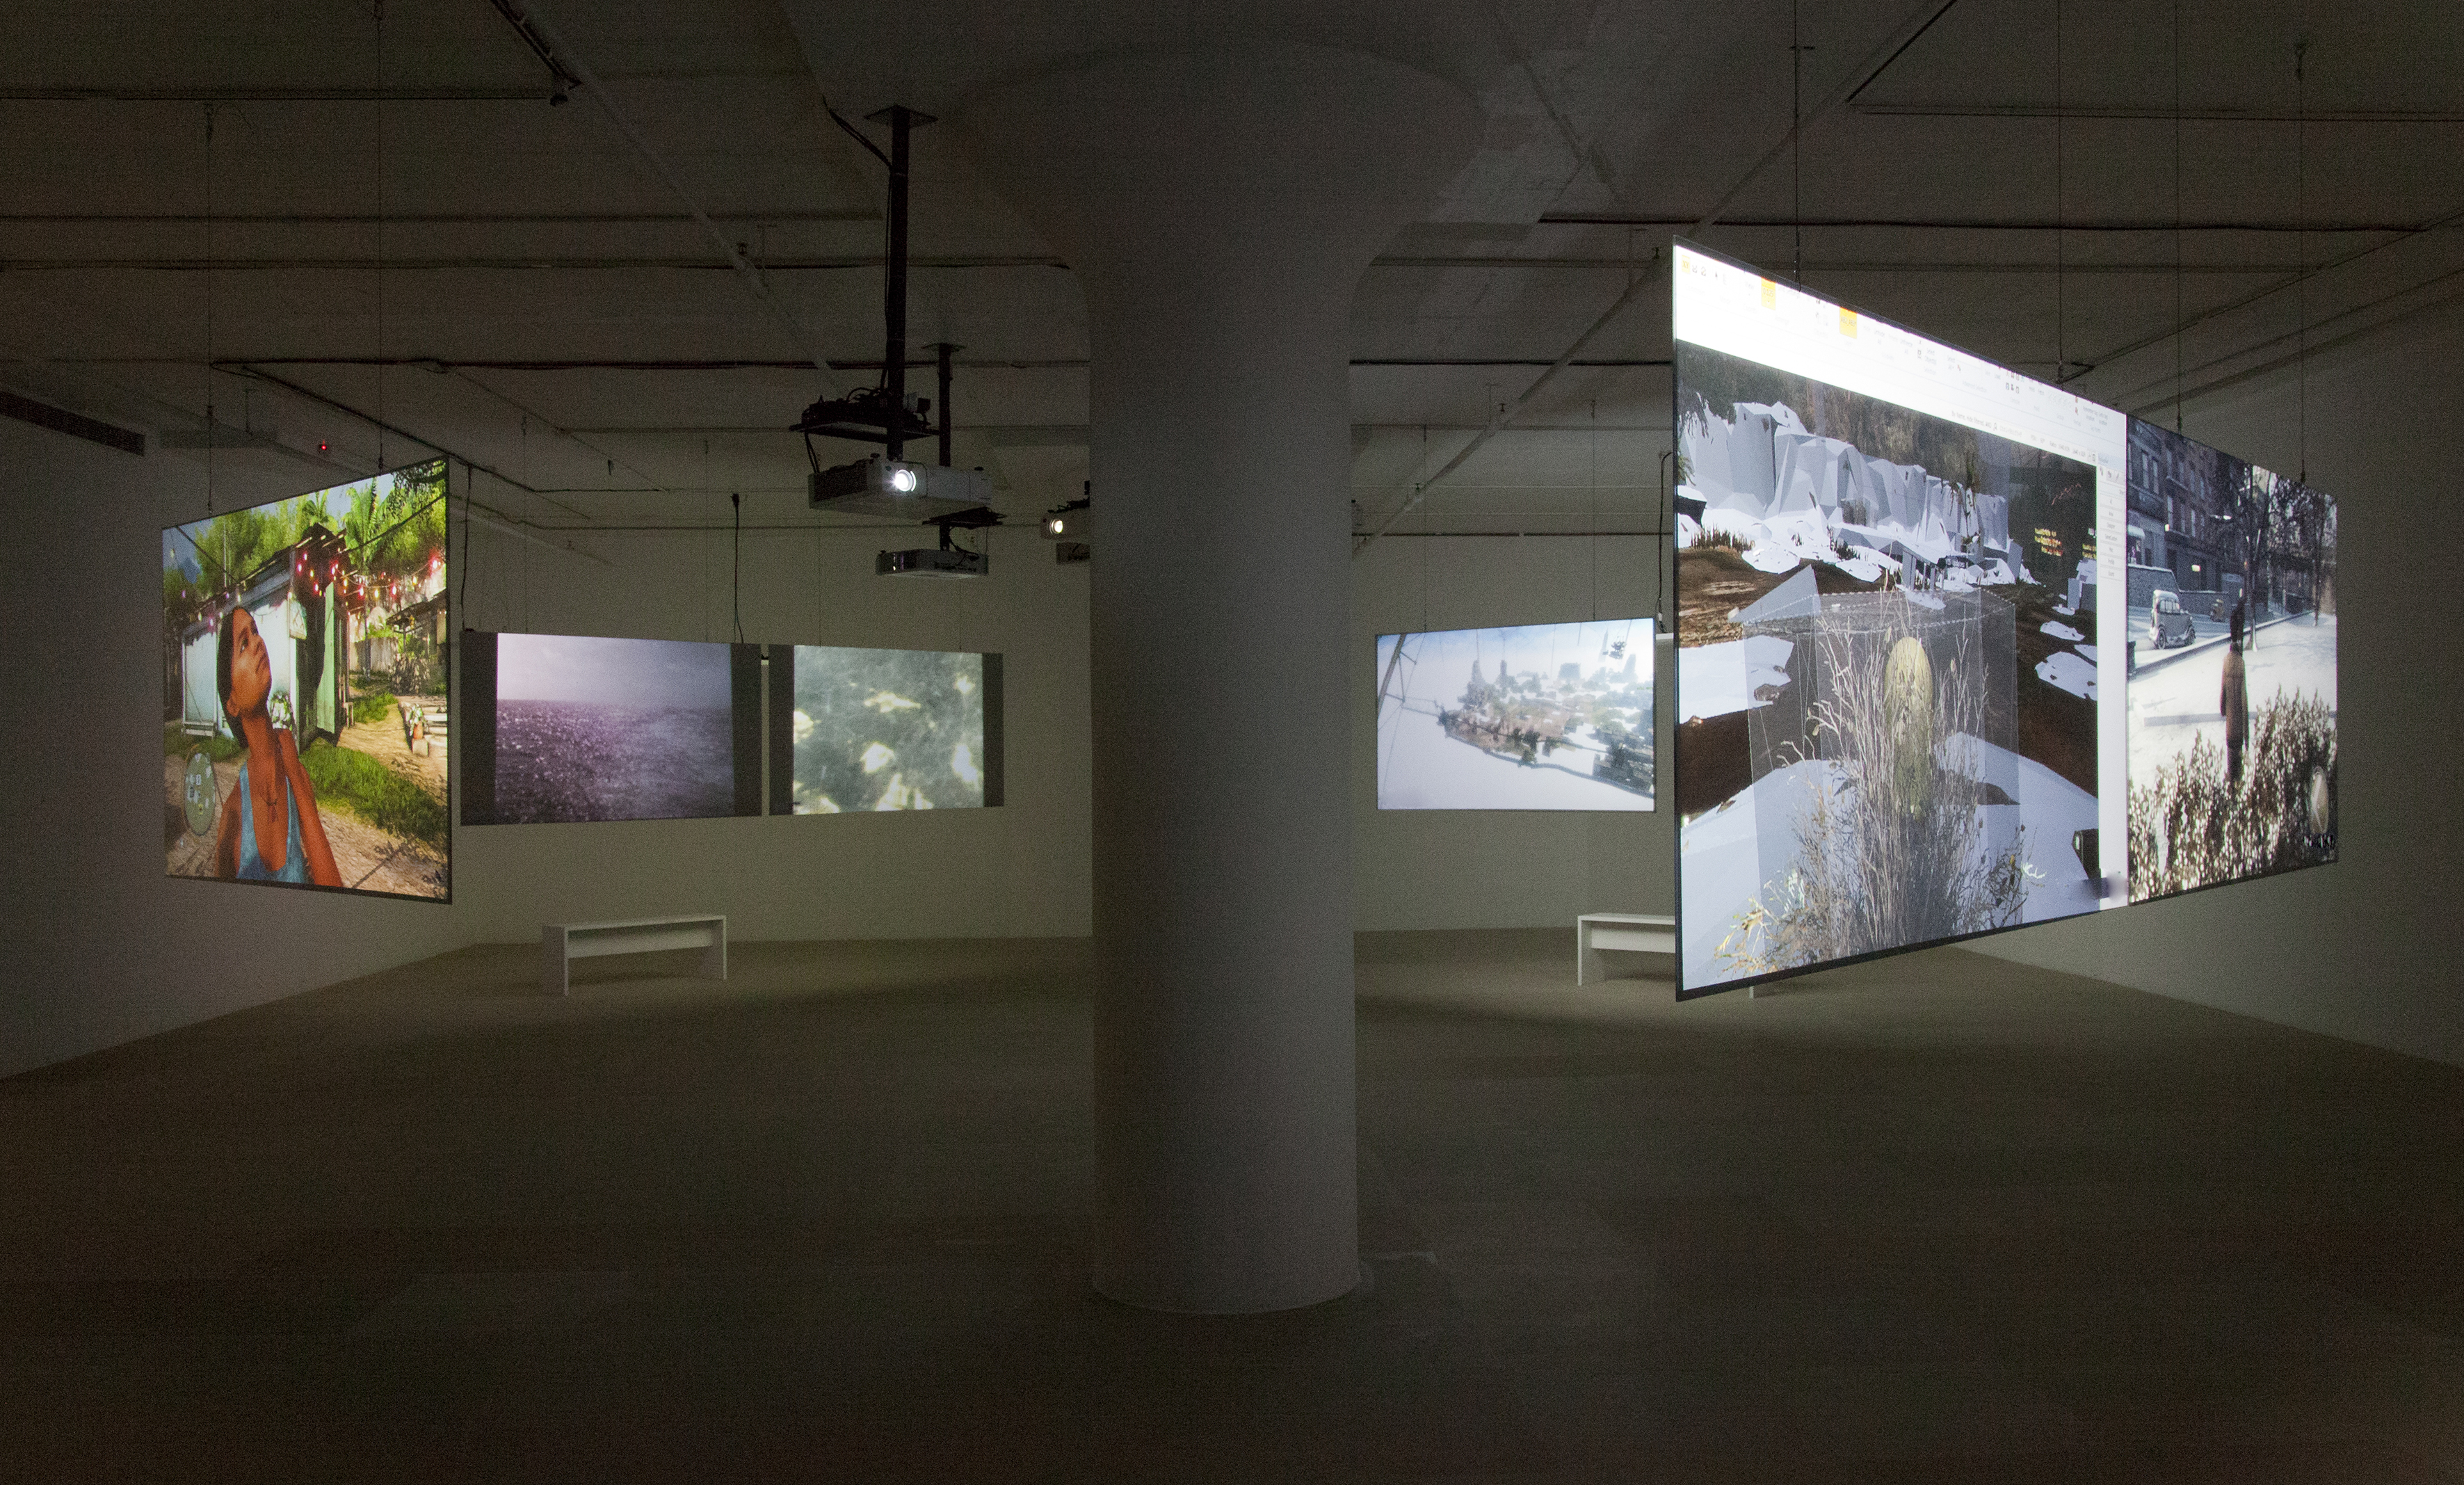 ﷯ Harun Farocki, Parallel I-IV (Installation View), 2012-14